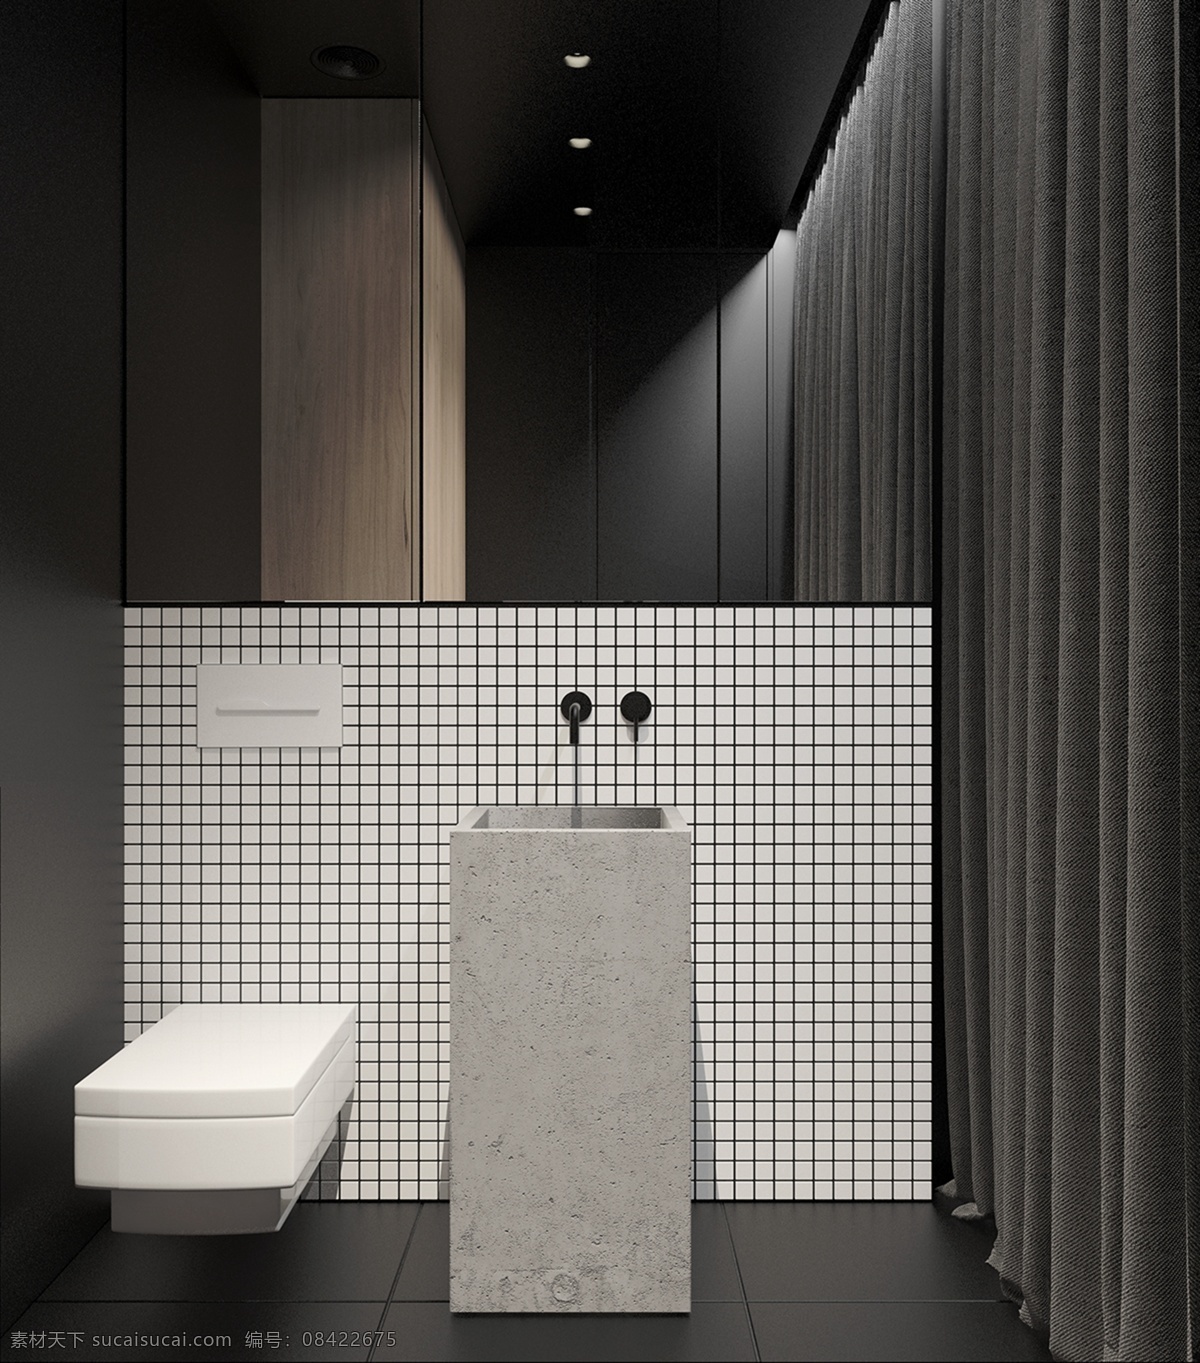 现代 简约 卫生间 黑色 亮 地板 室内装修 效果图 瓷砖洗手台 格子背景墙 黑色地板 卫生间装修